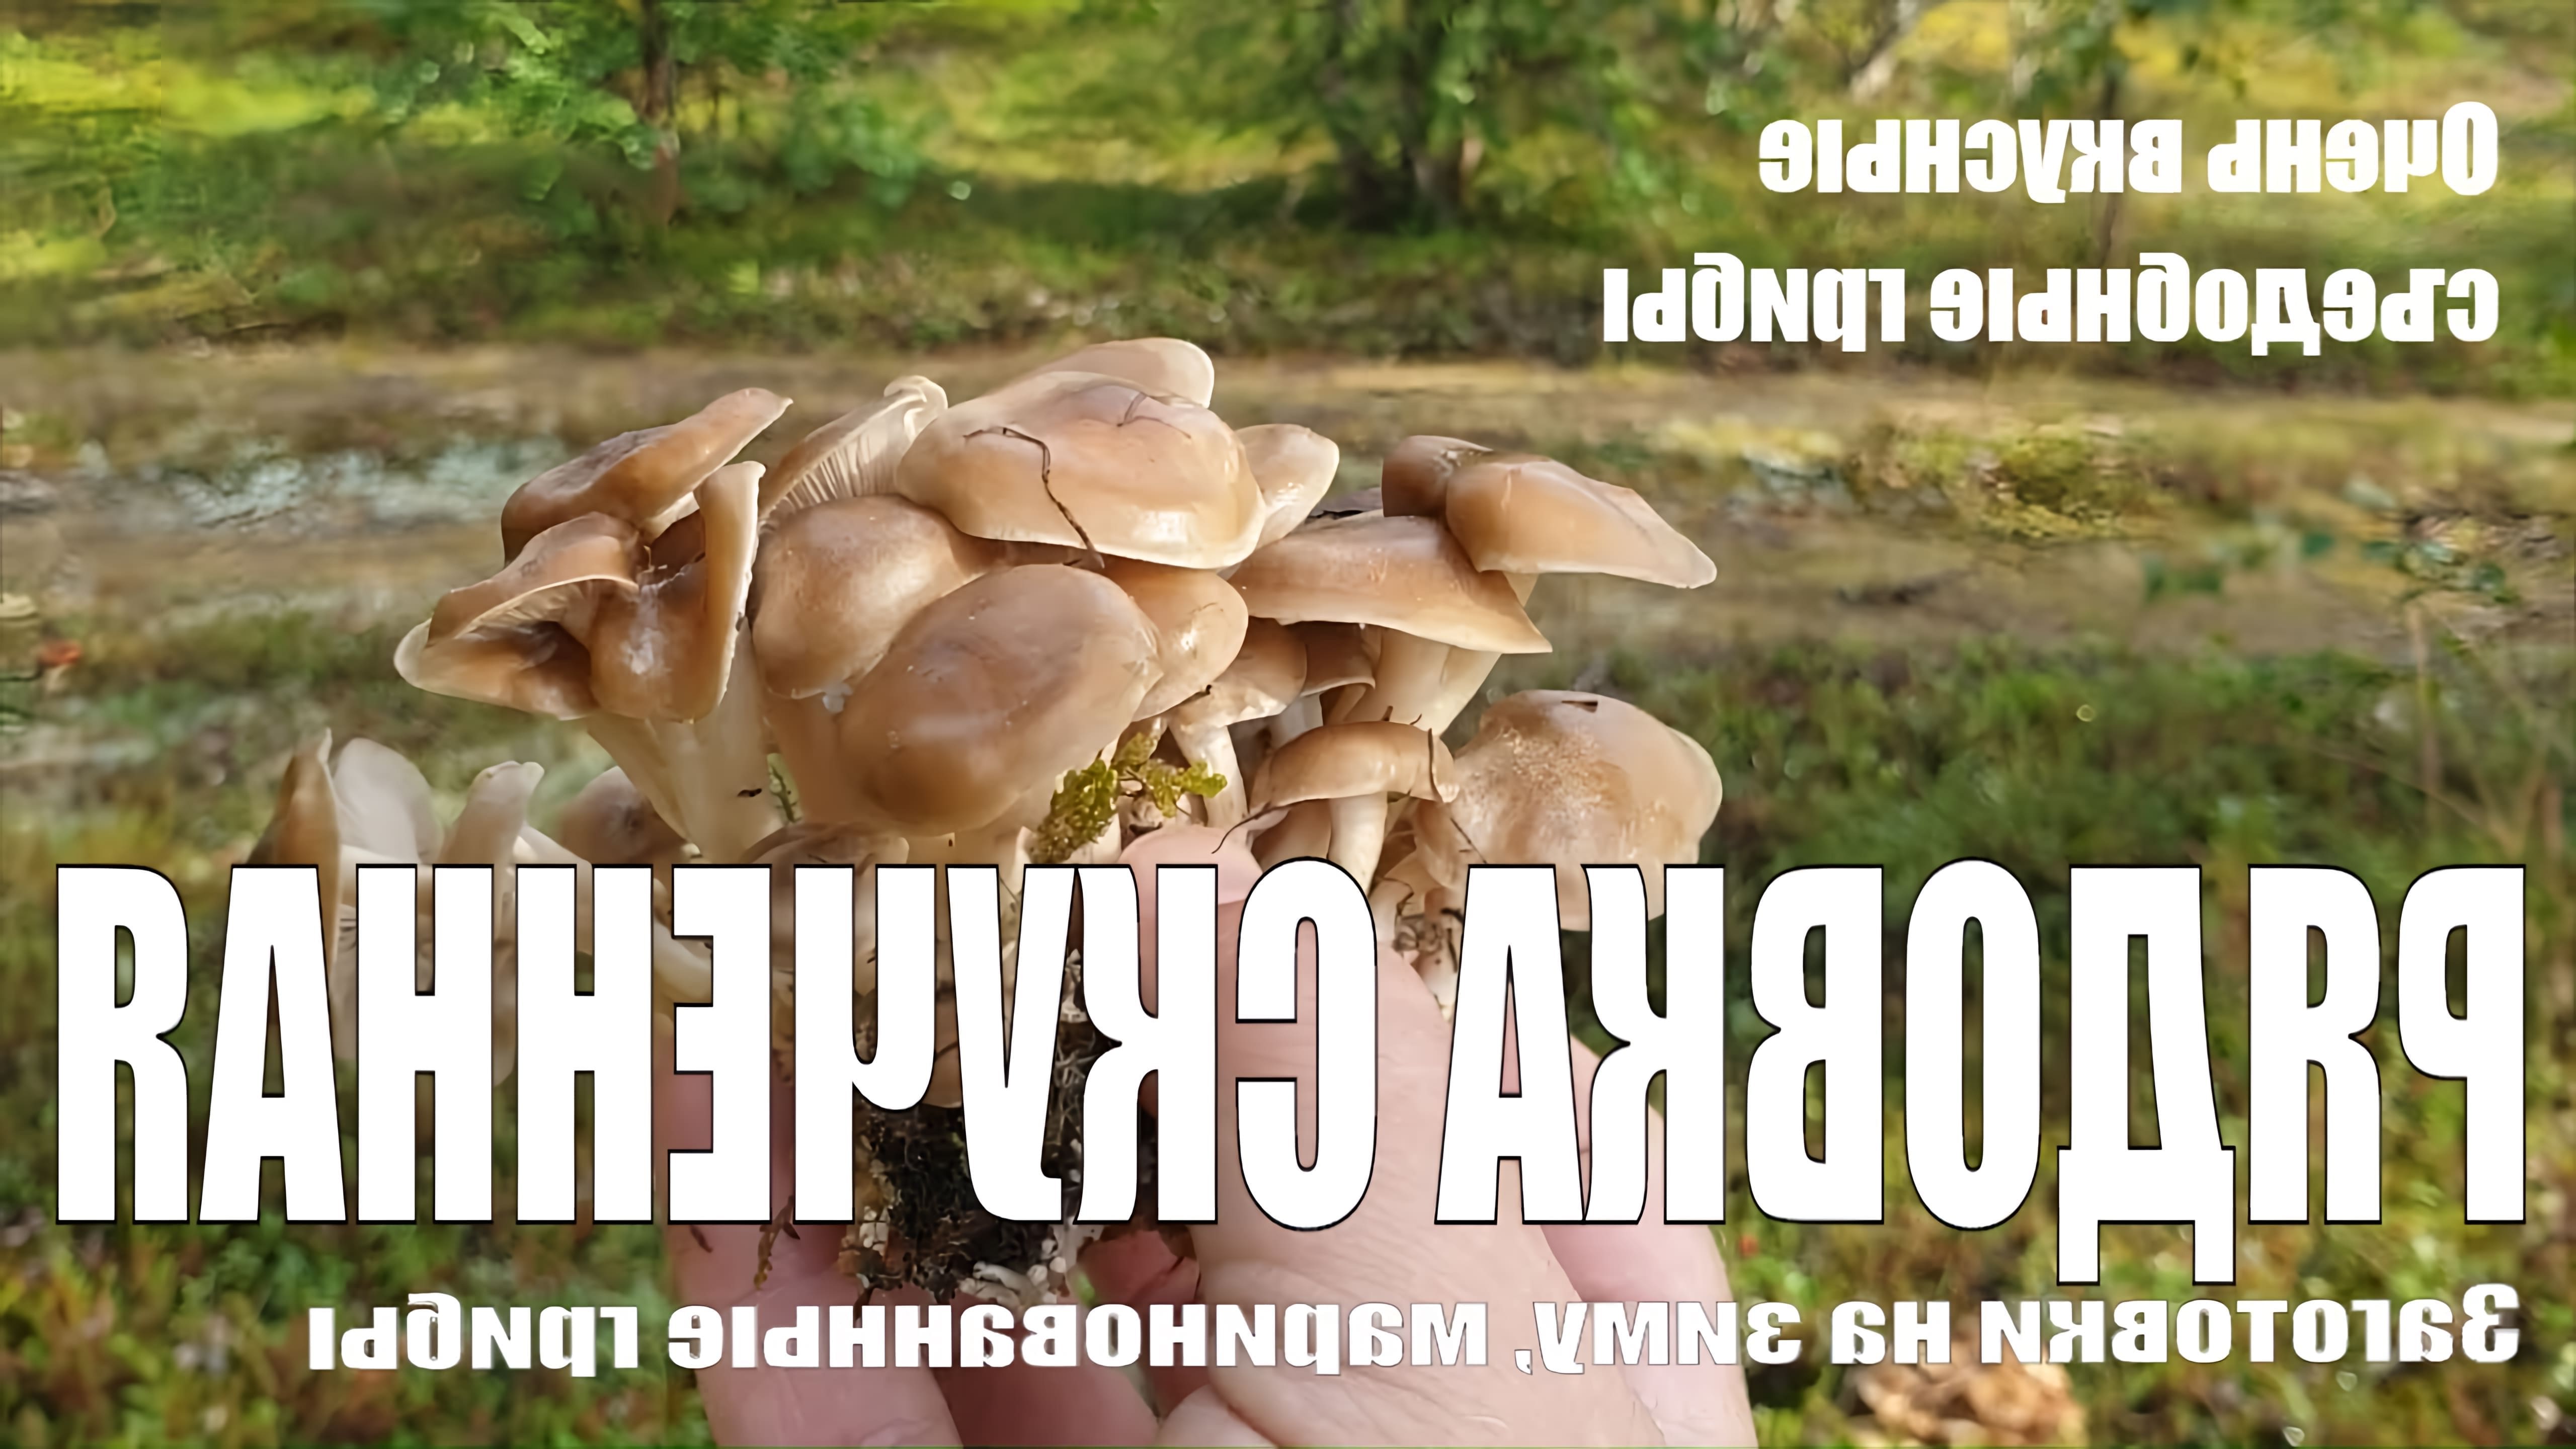 Как приготовить быстро и вкусно вареные грибы? Ответ на этот вопрос гораздо проще, чем кажется. Если из похода за... 